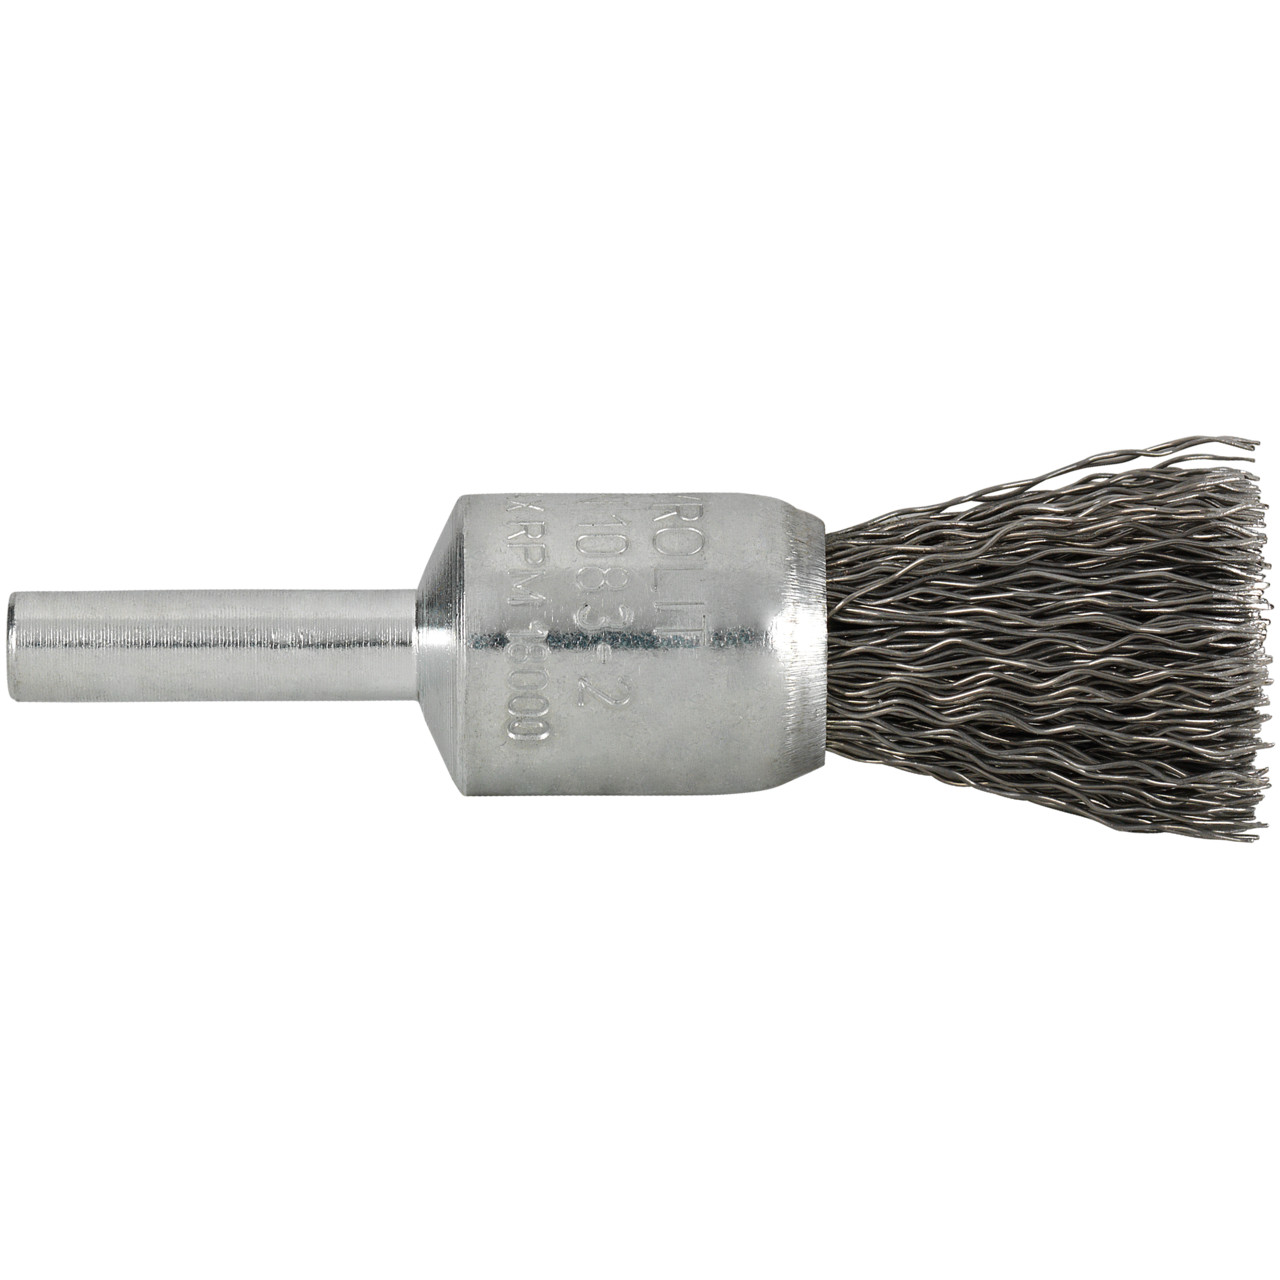 Spazzole Tyrolit DxH-GExI 30x25-6x68 Per acciaio, forma: 52PDW - (spazzole), Art. 58293